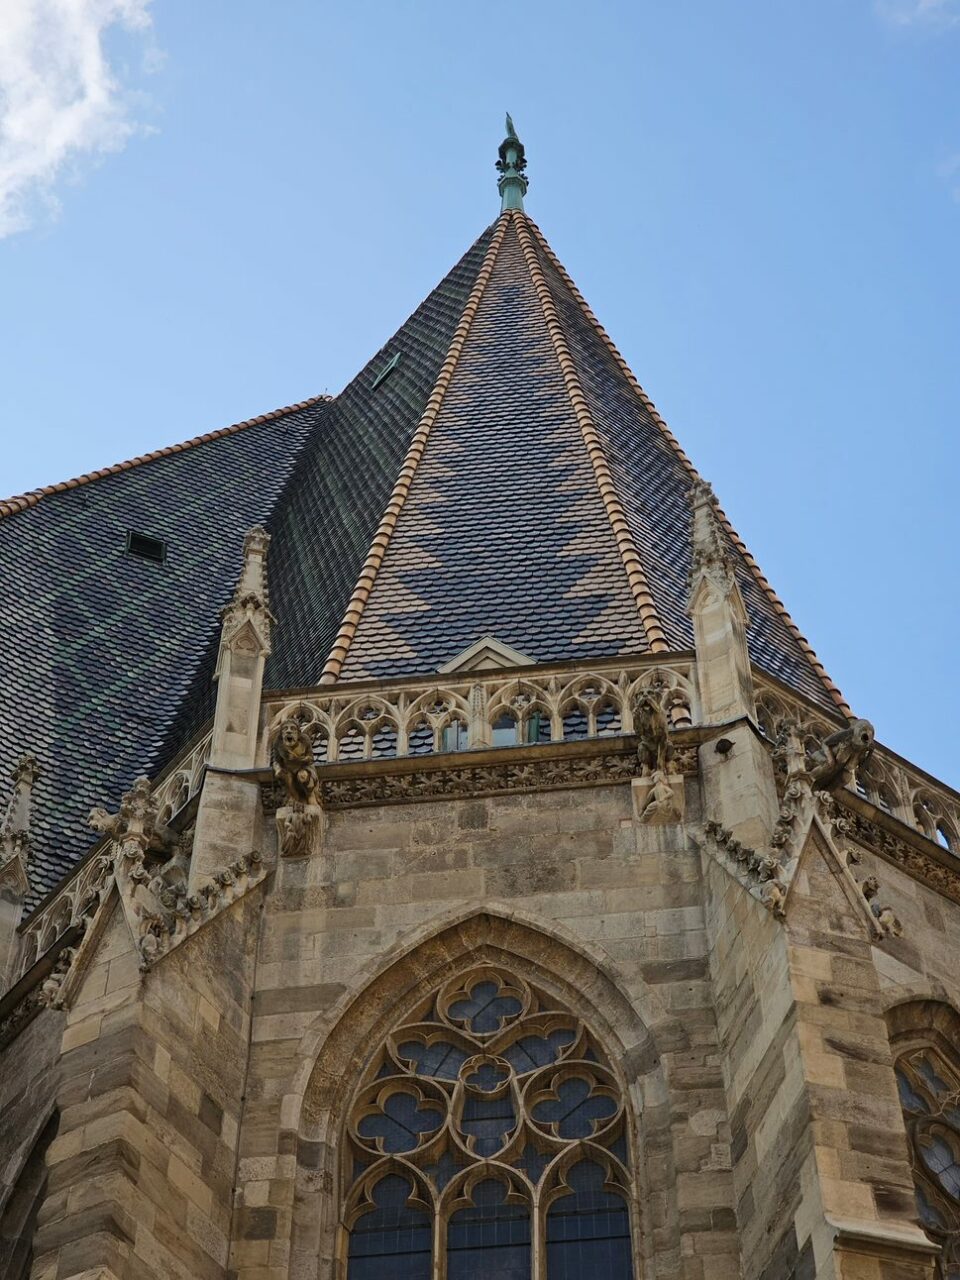 Bilde tatt tett på spiret på en kirke, hvor du ser rutete detaljer på taket. Foto